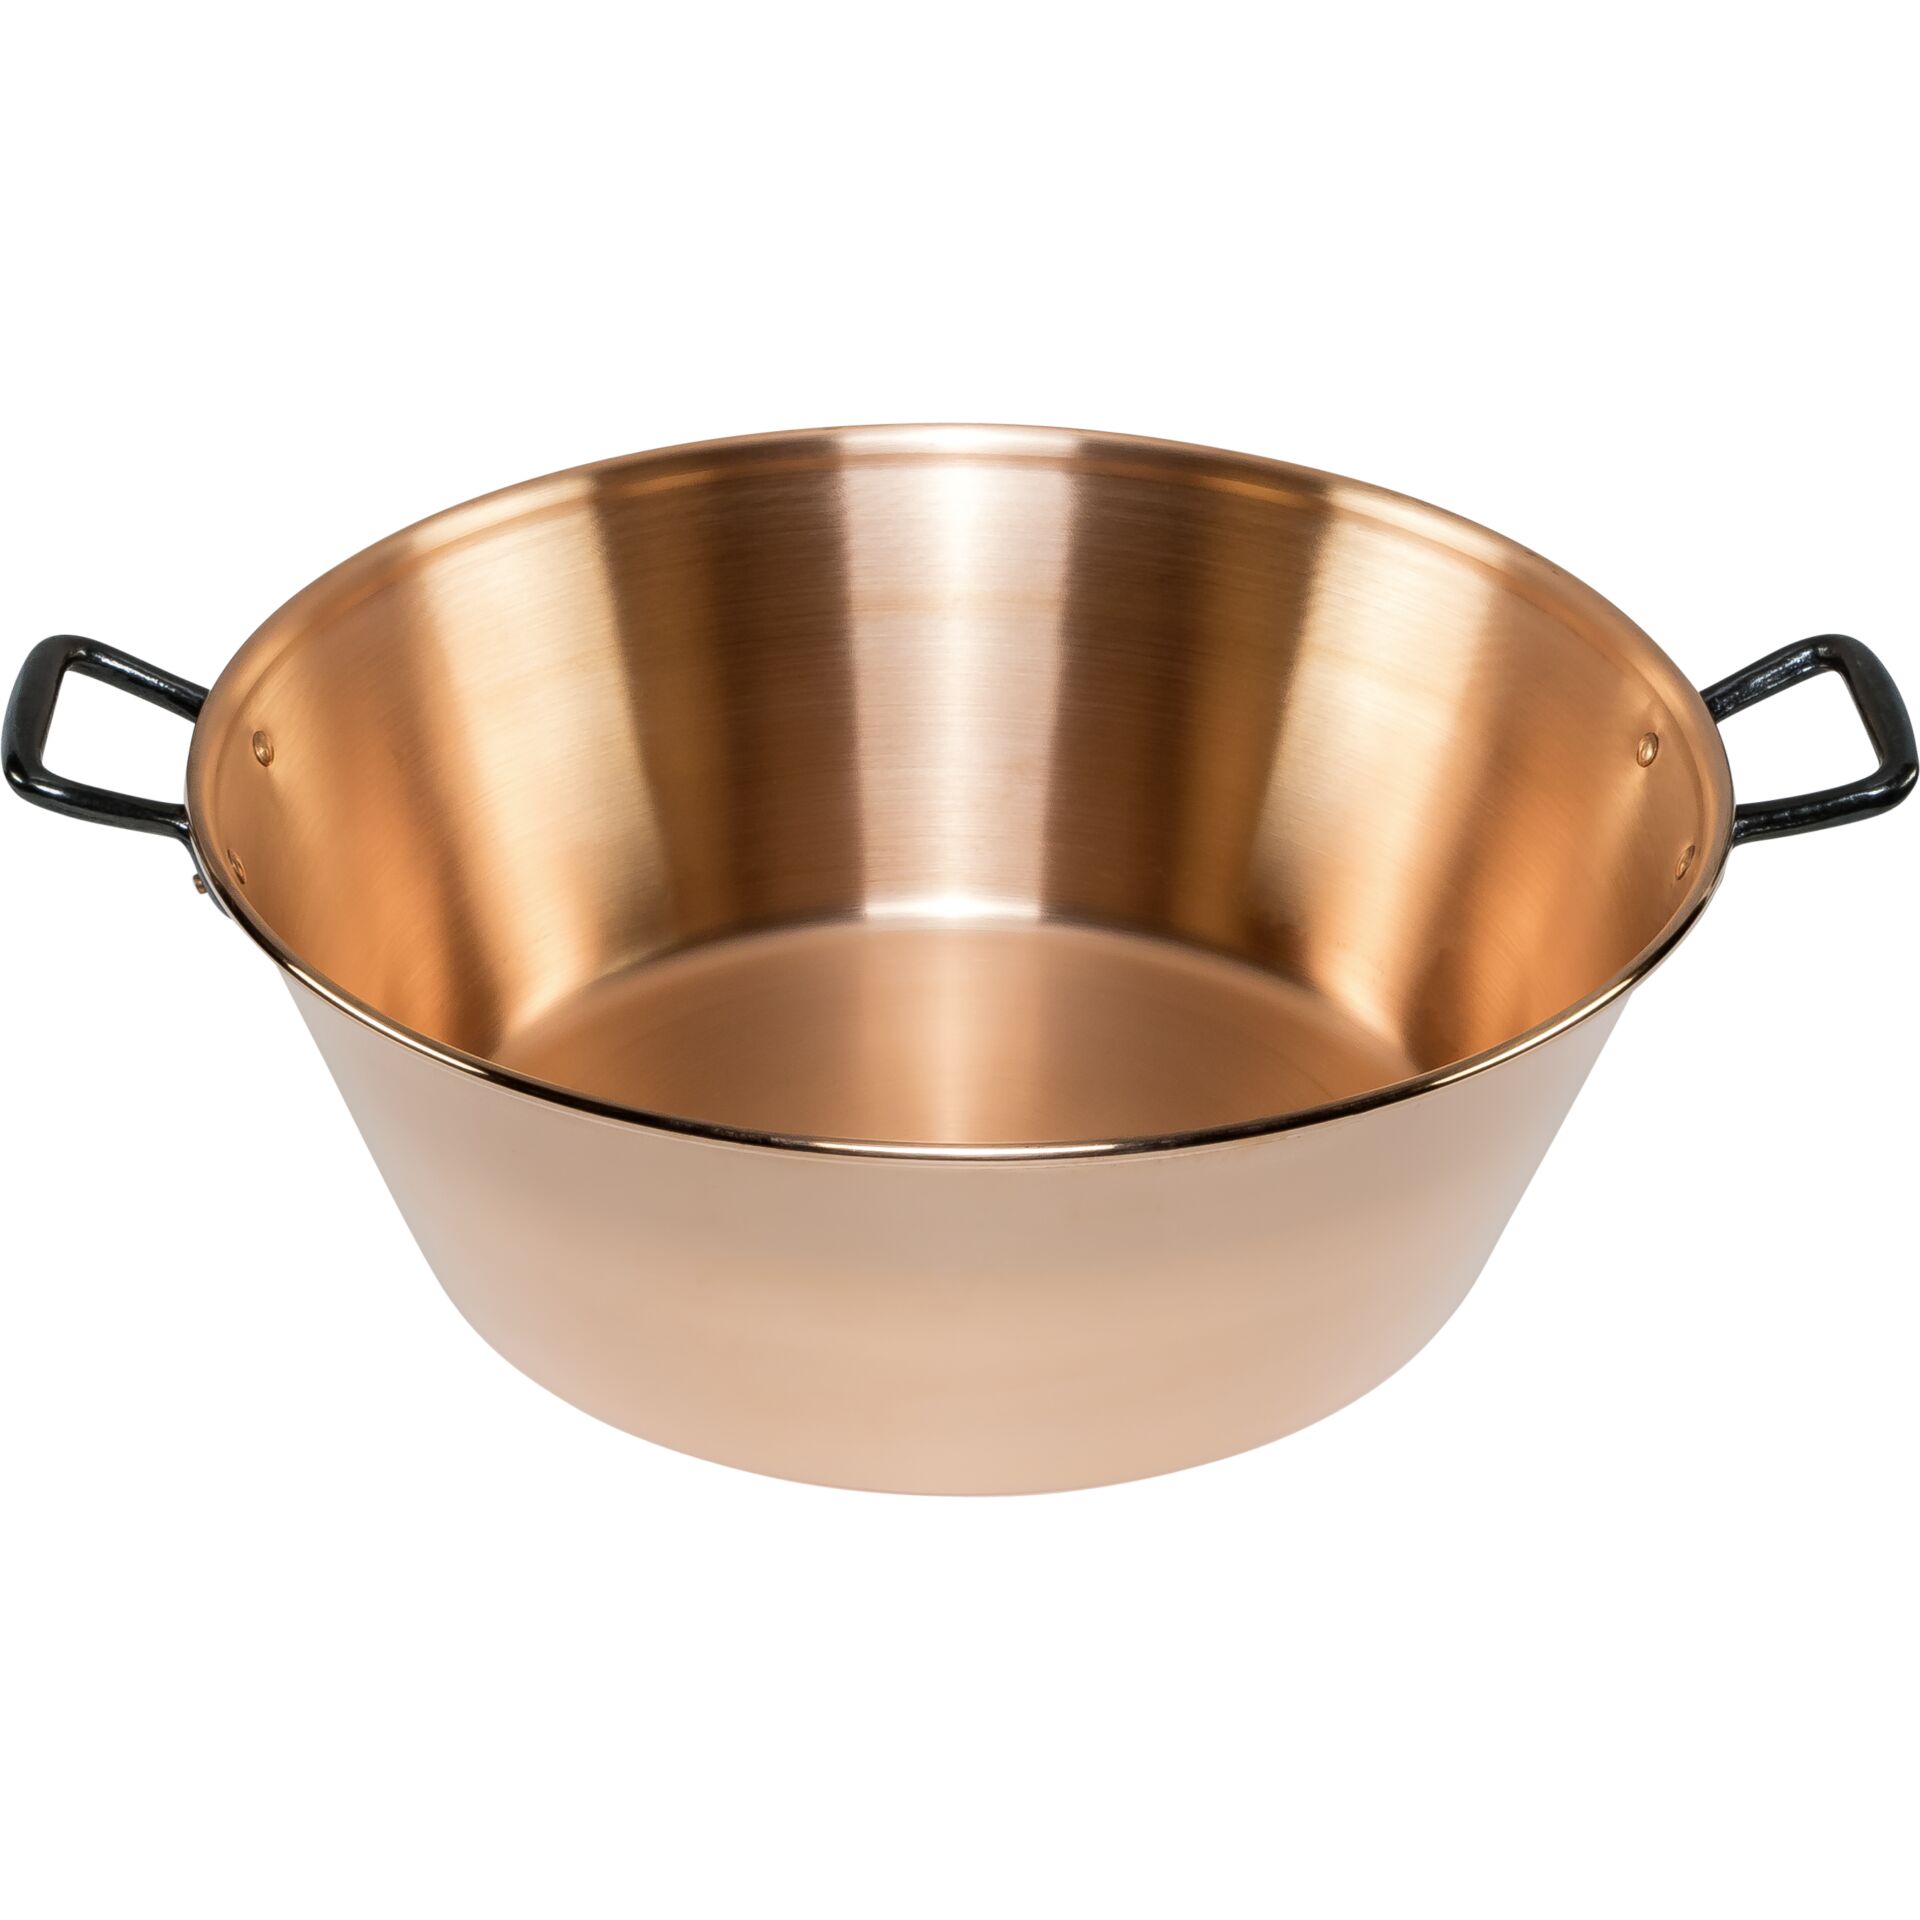 De Buyer incuivre Jam Pot Copper smooth 38cm 9 Litre